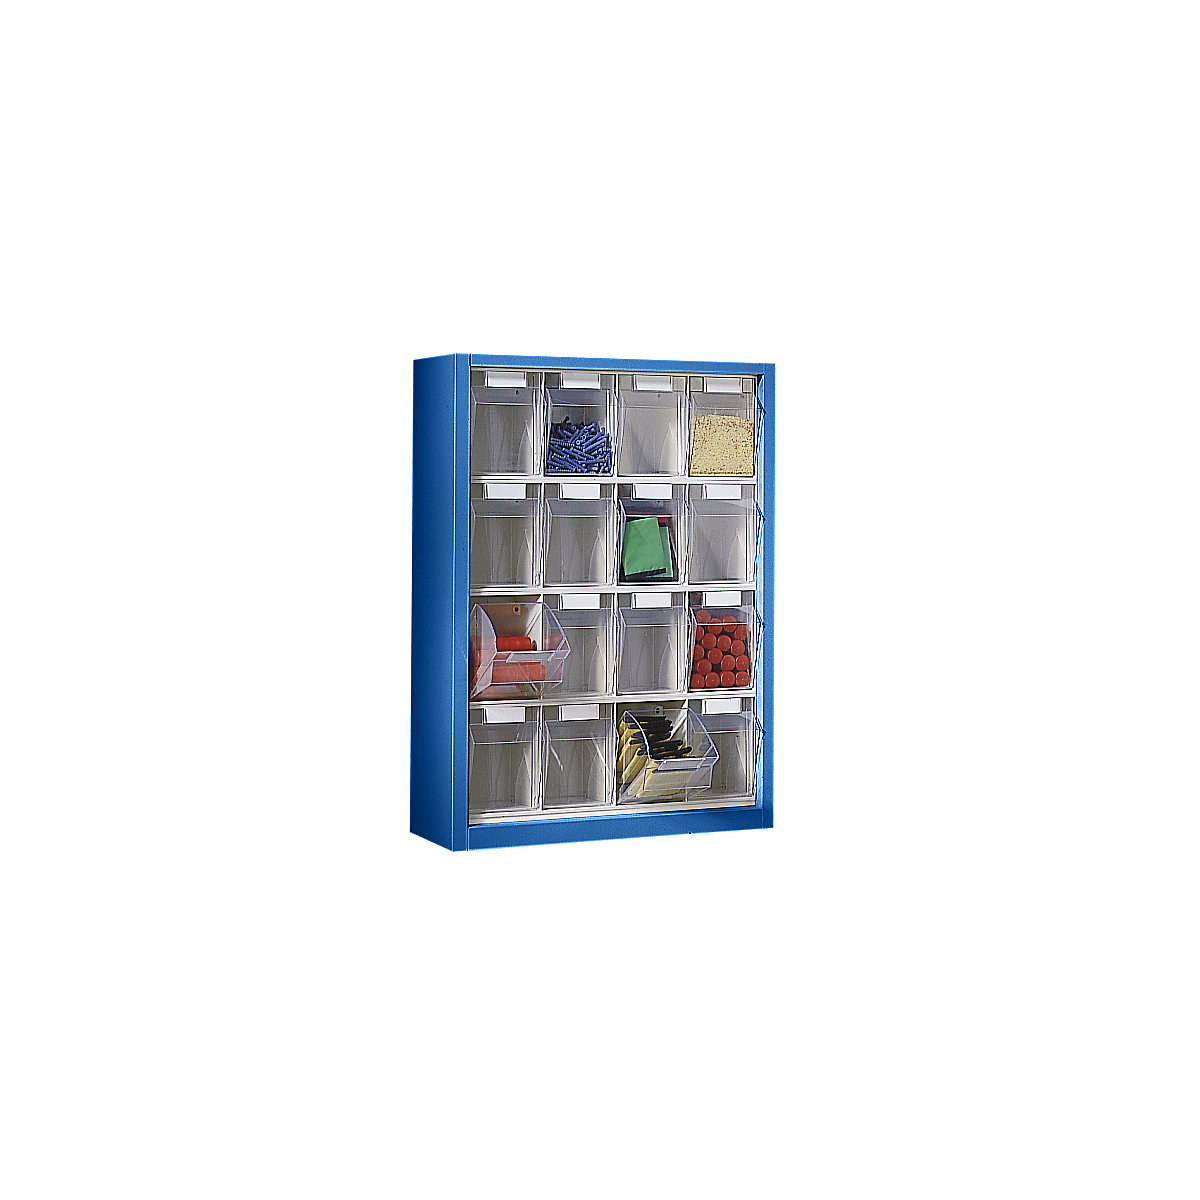 Závěsná skříň s výklopnými nádobami, v x š x h 910 x 665 x 250 mm, s 16 přepravkami, barva tělesa hořcově modrá-2